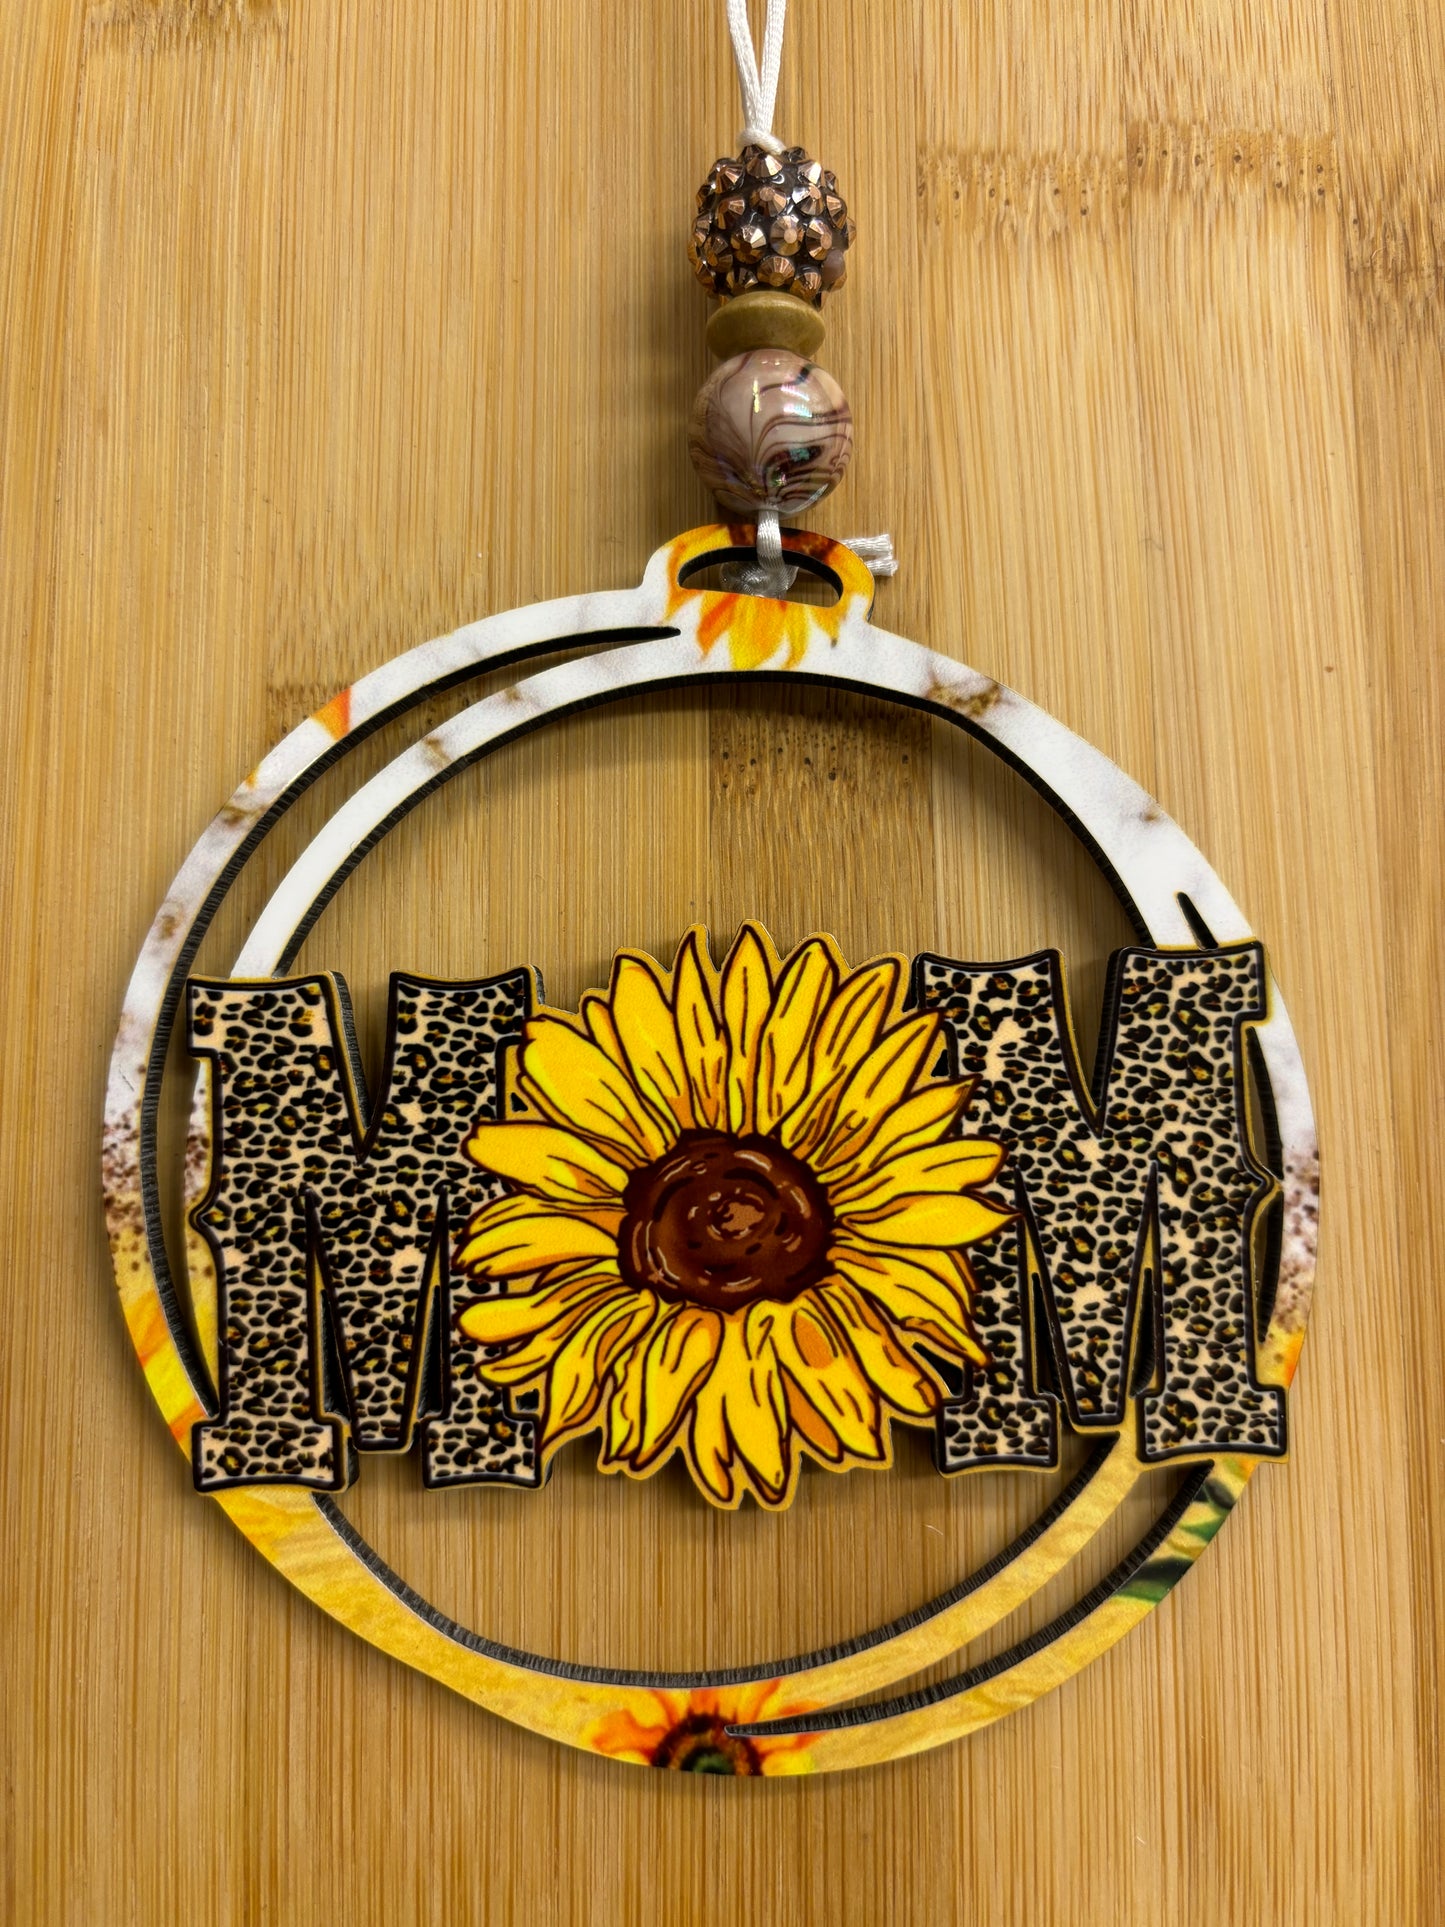 Sunflower “Mom” Hanger